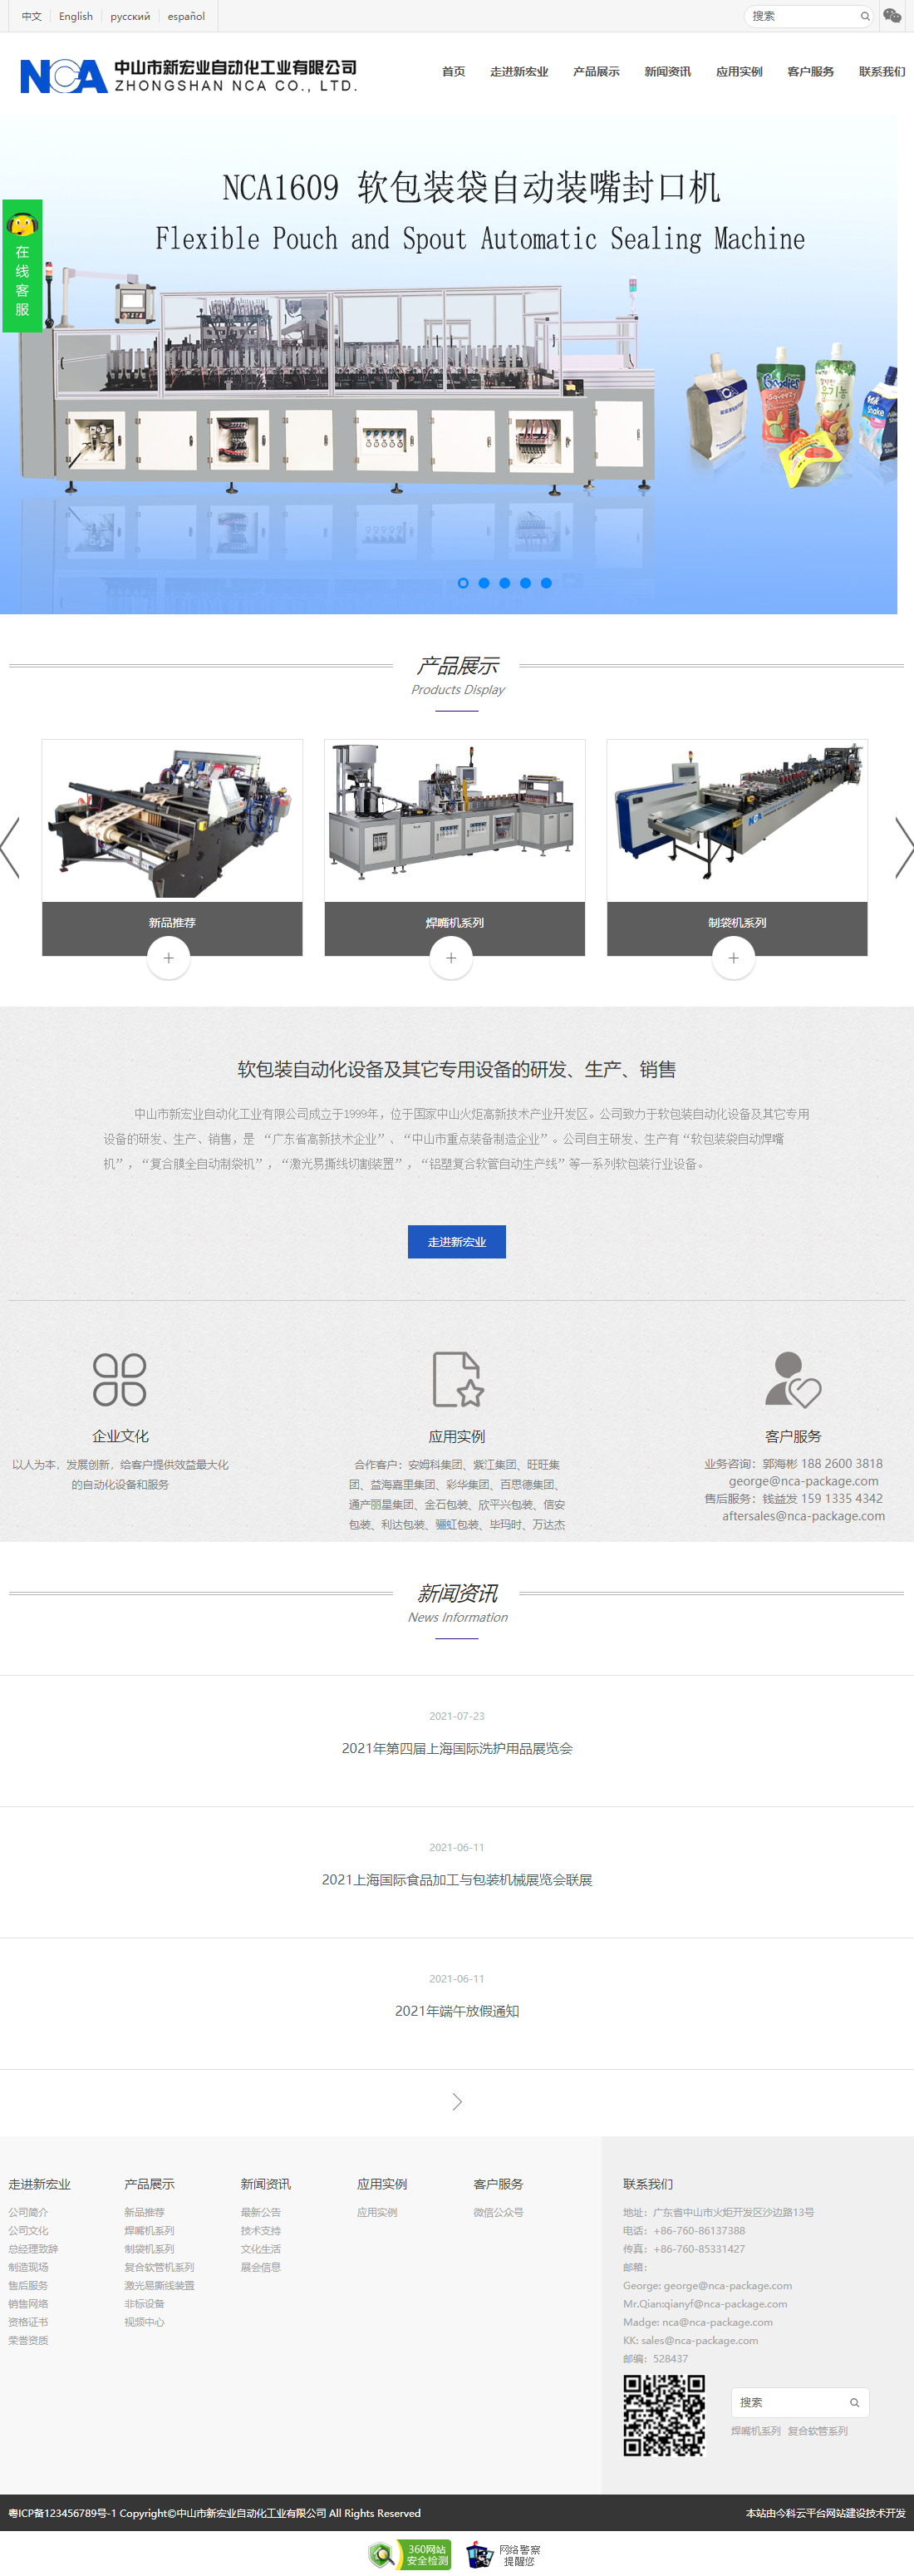 中山市新宏业自动化工业有限公司网站案例